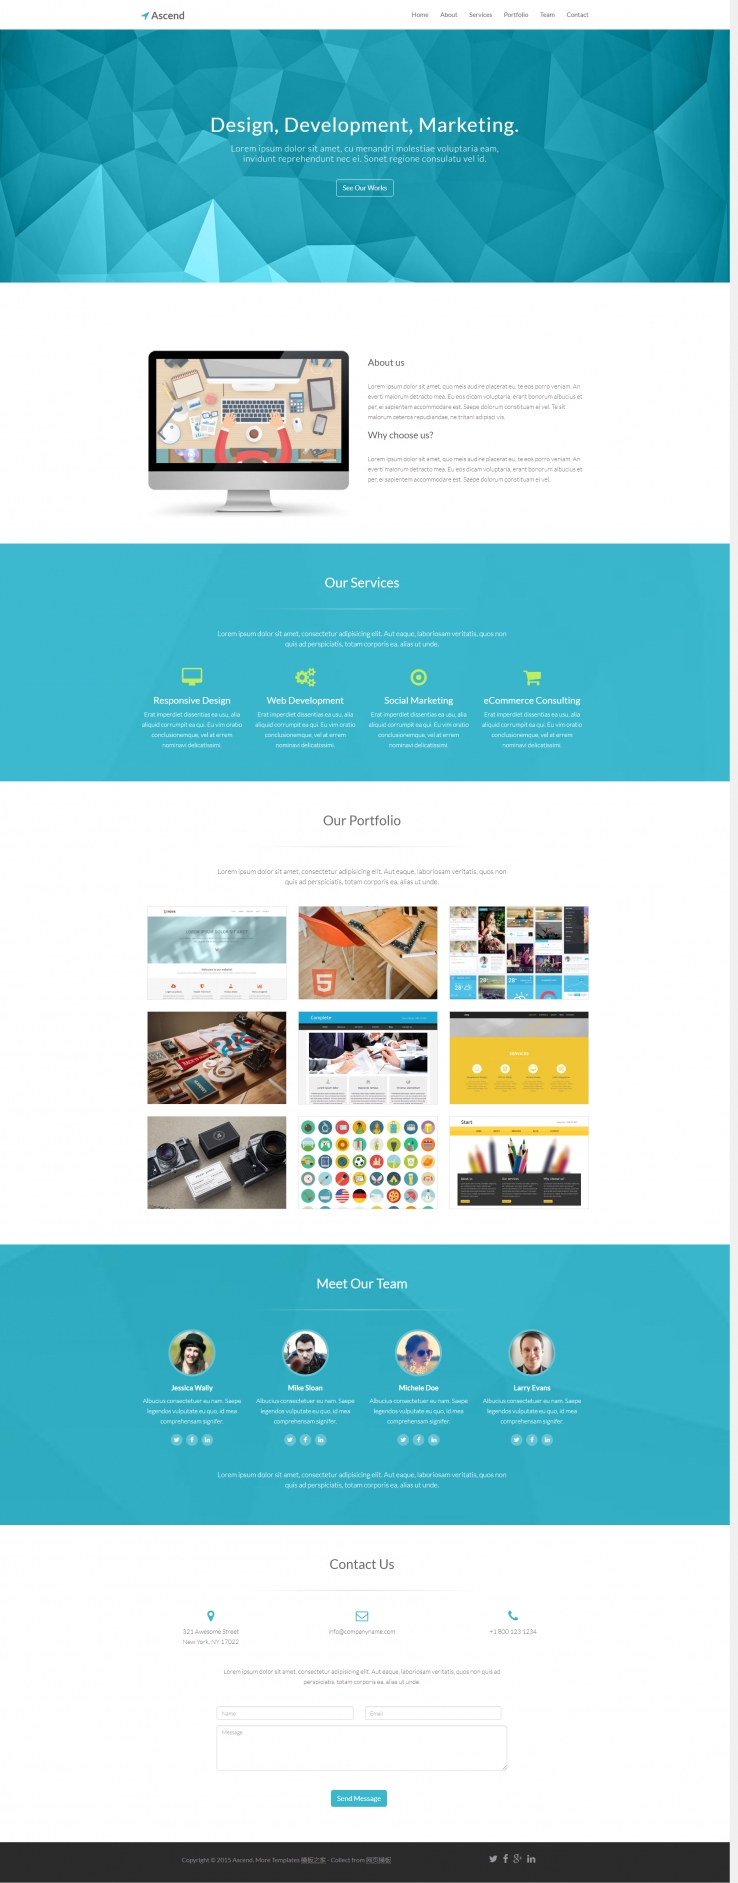 蓝色简单风格的设计作品案例网站模板下载